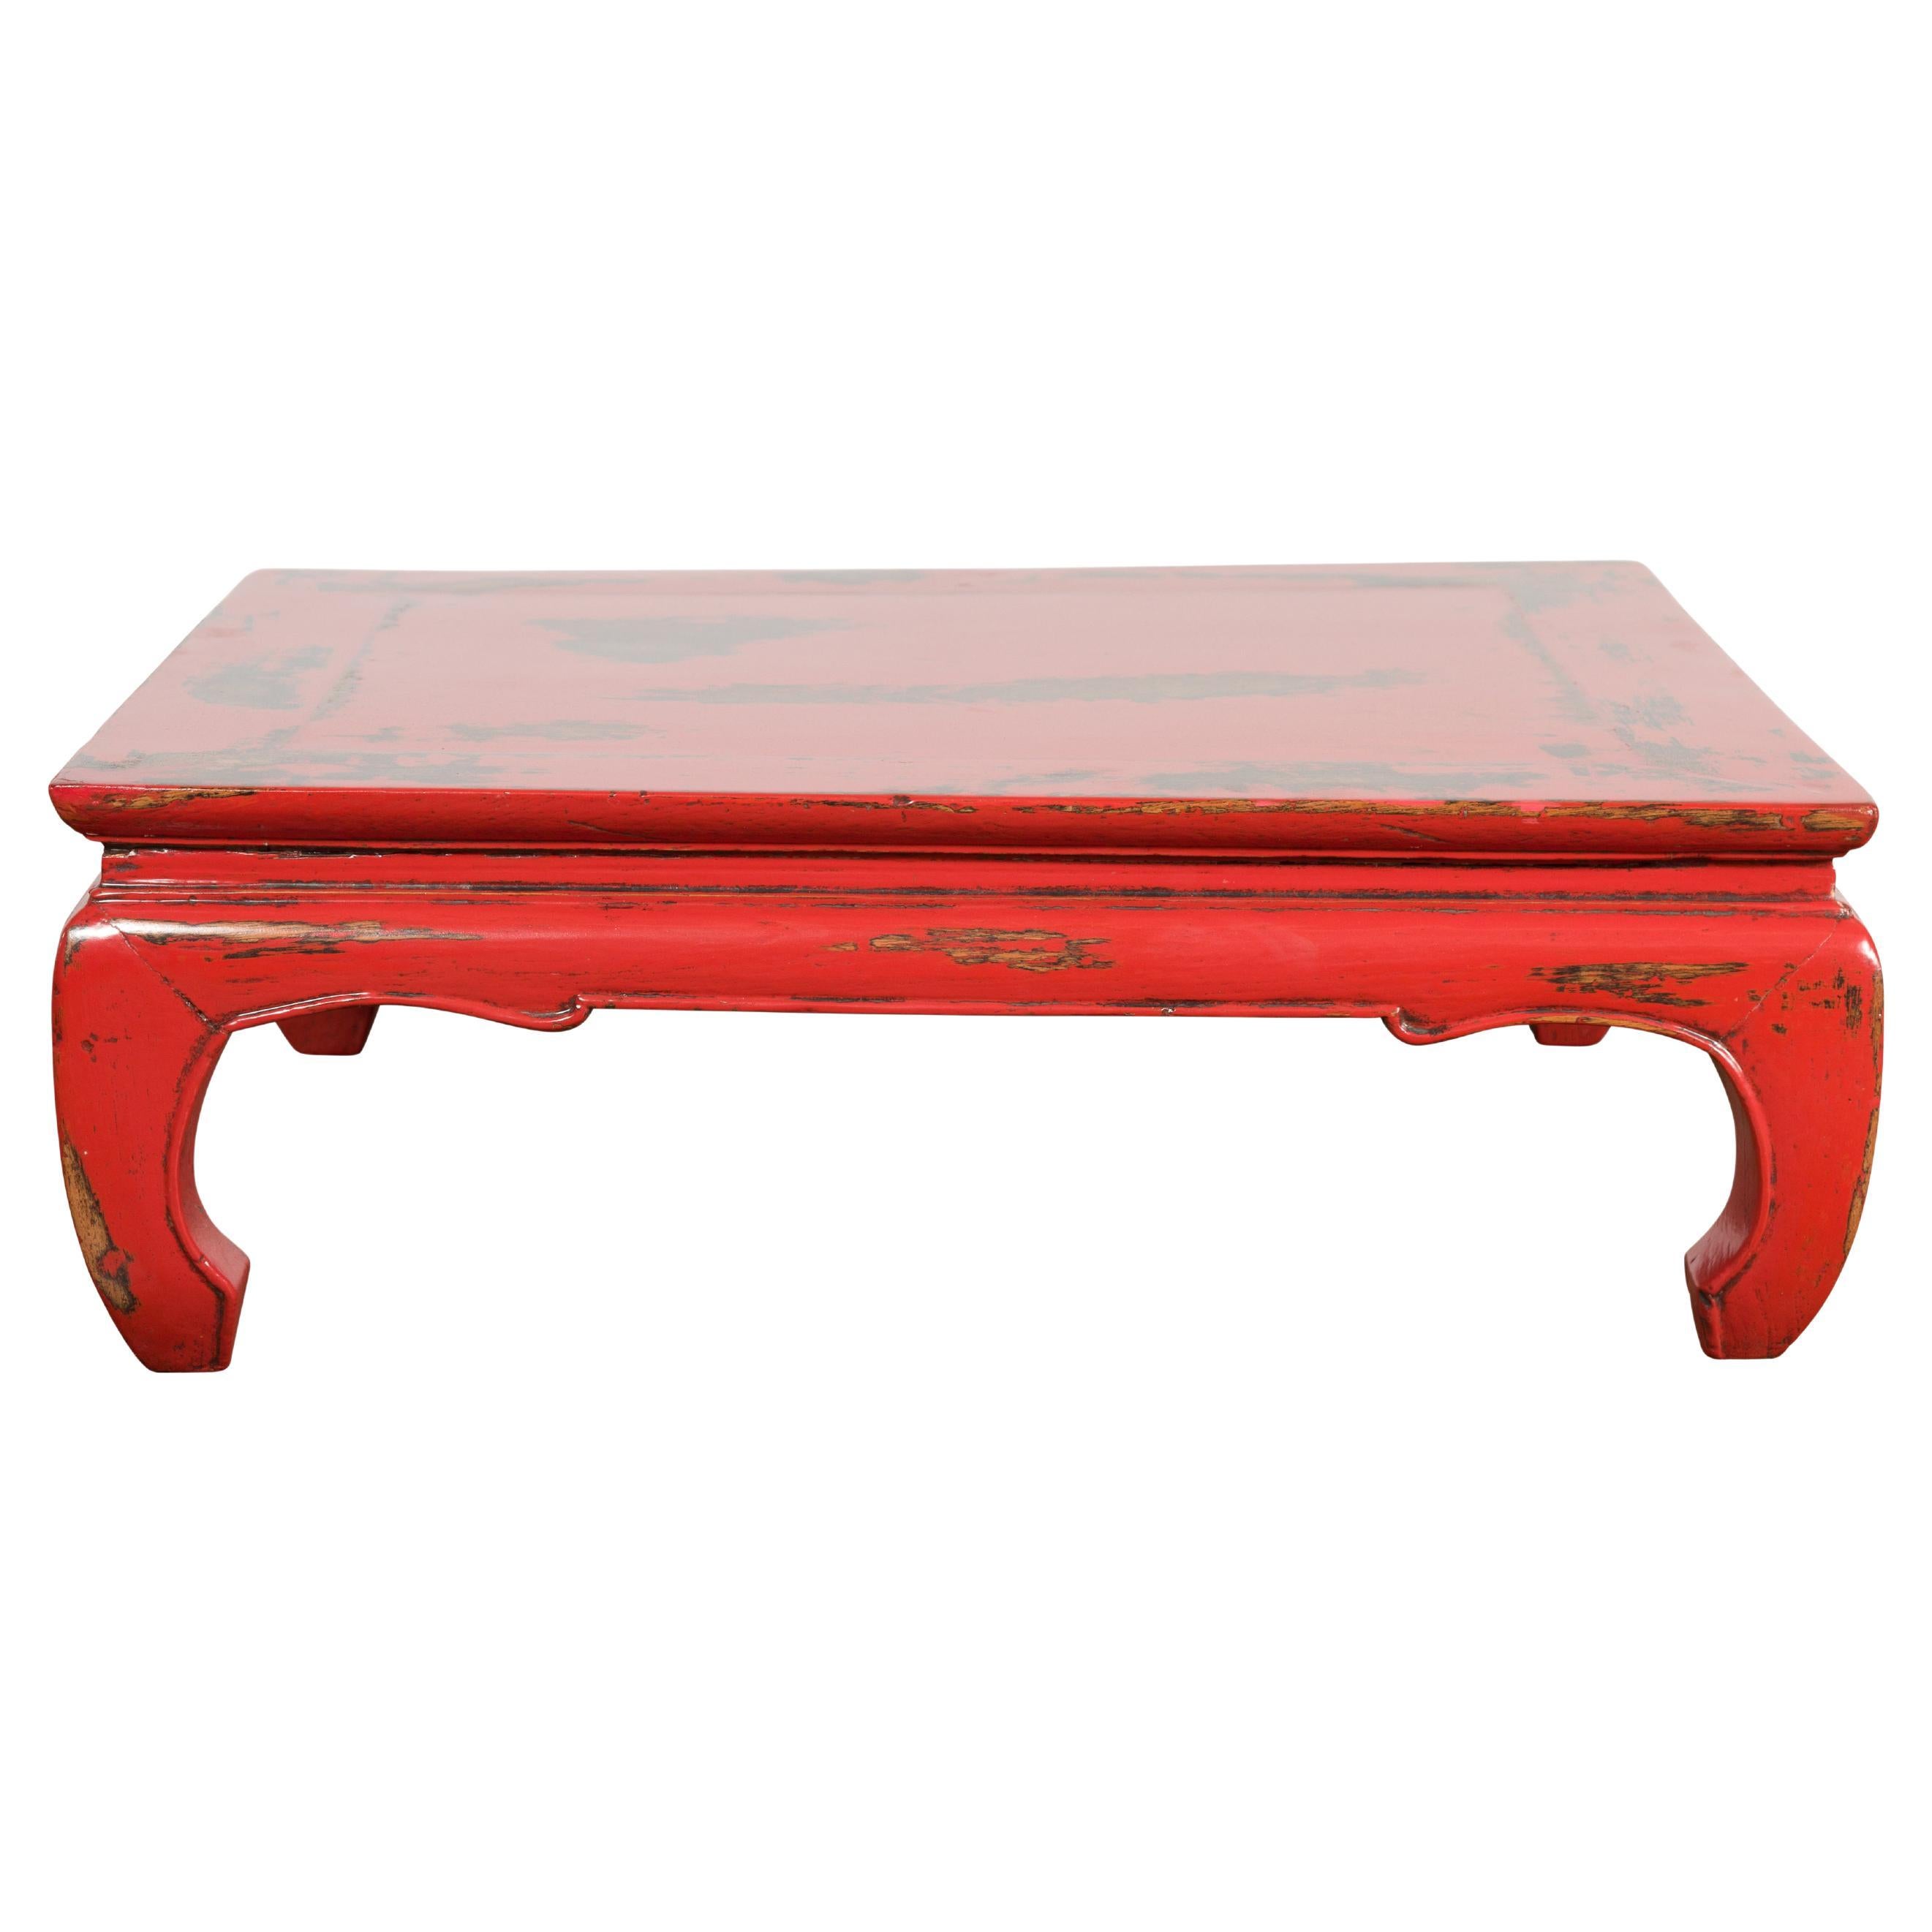 Table basse Kang de la dynastie chinoise Qing avec laque rouge vieillie sur mesure